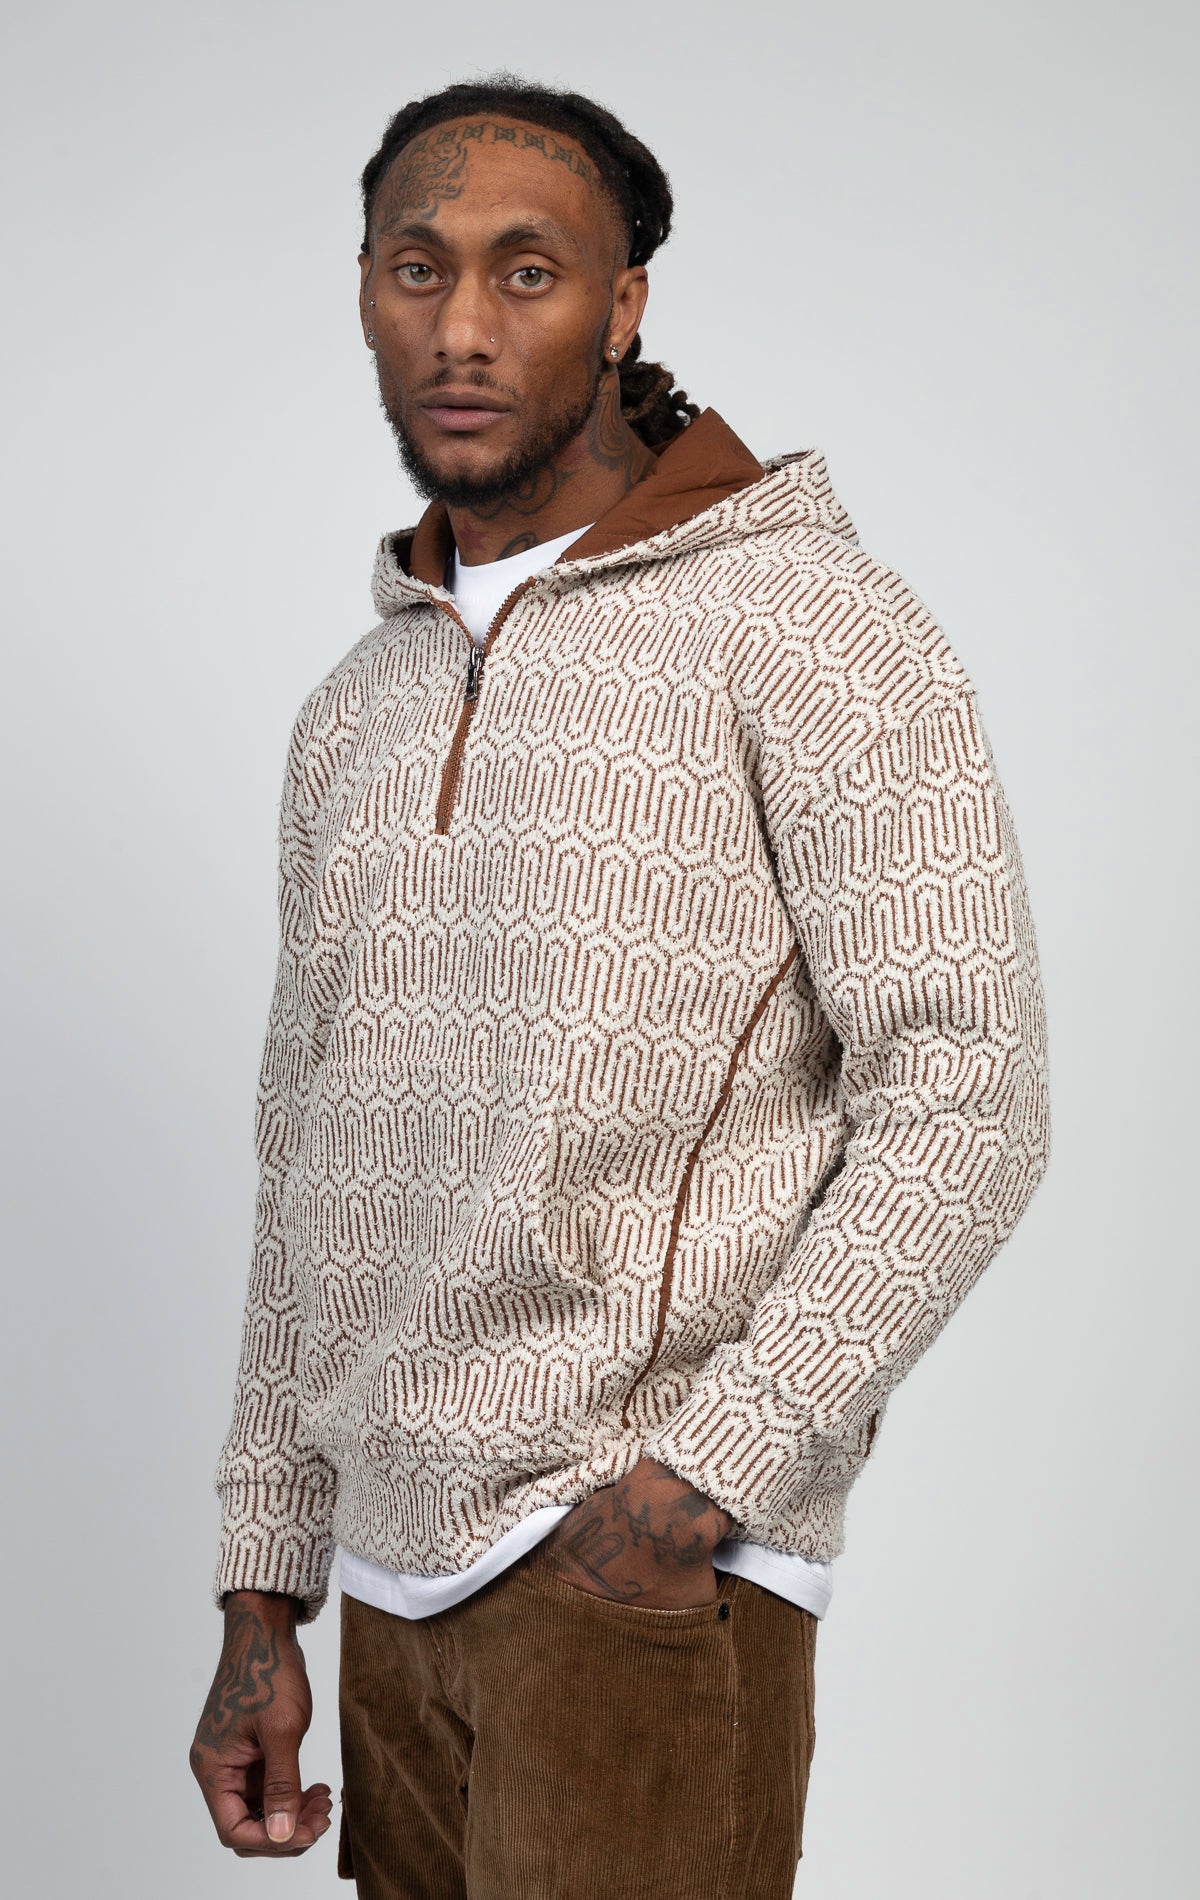 Textile patterned loungewear hoodie